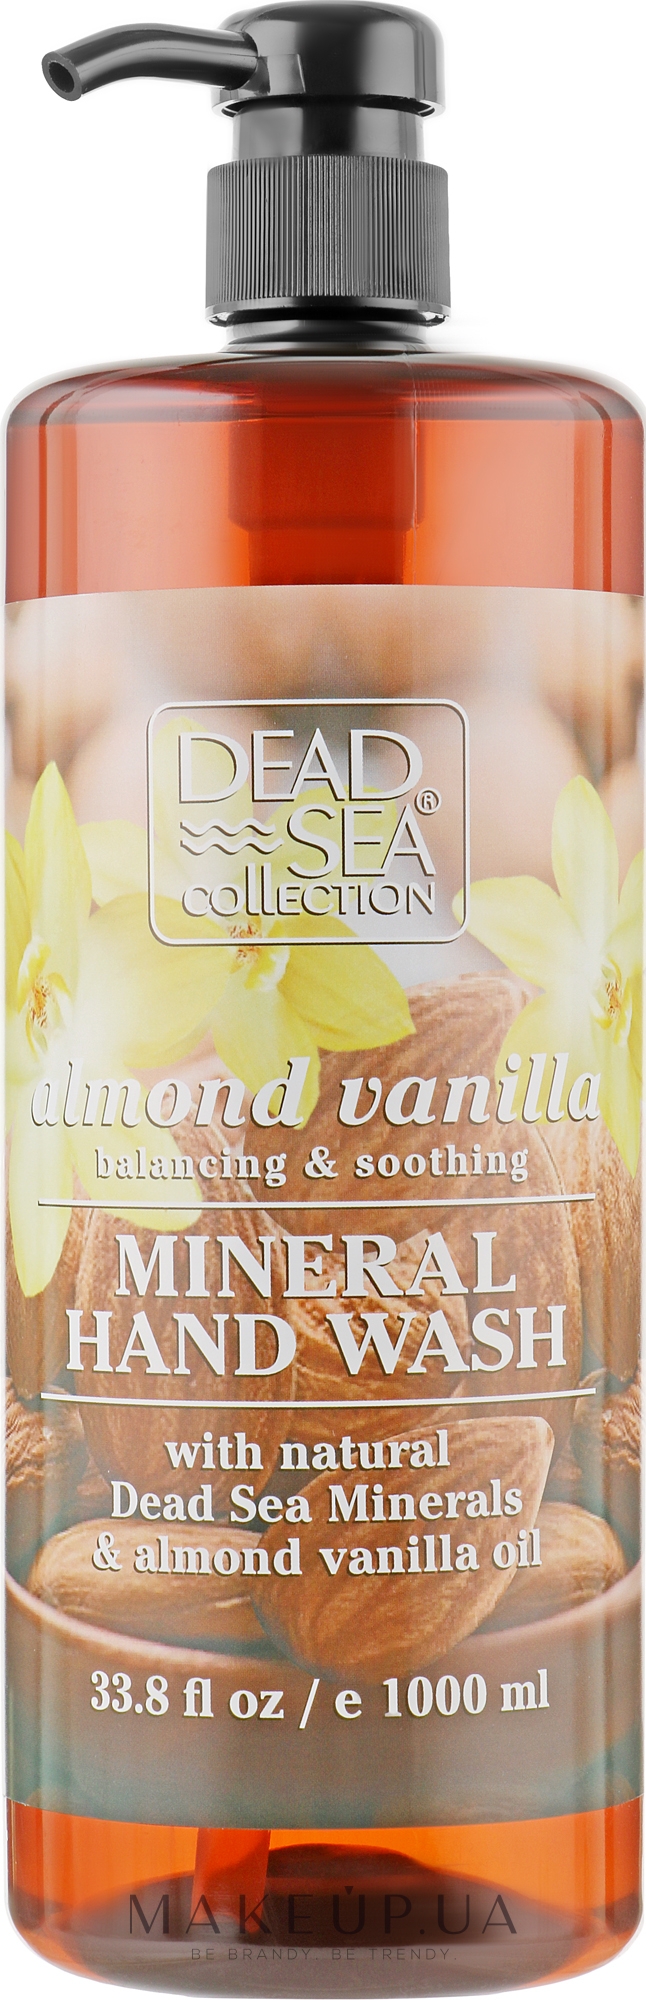 Жидкое мыло с минералами Мертвого моря, маслом миндаля и ванили - Dead Sea Collection Almond Vanila&Dead Sea Minerals Hand Soap — фото 1000ml